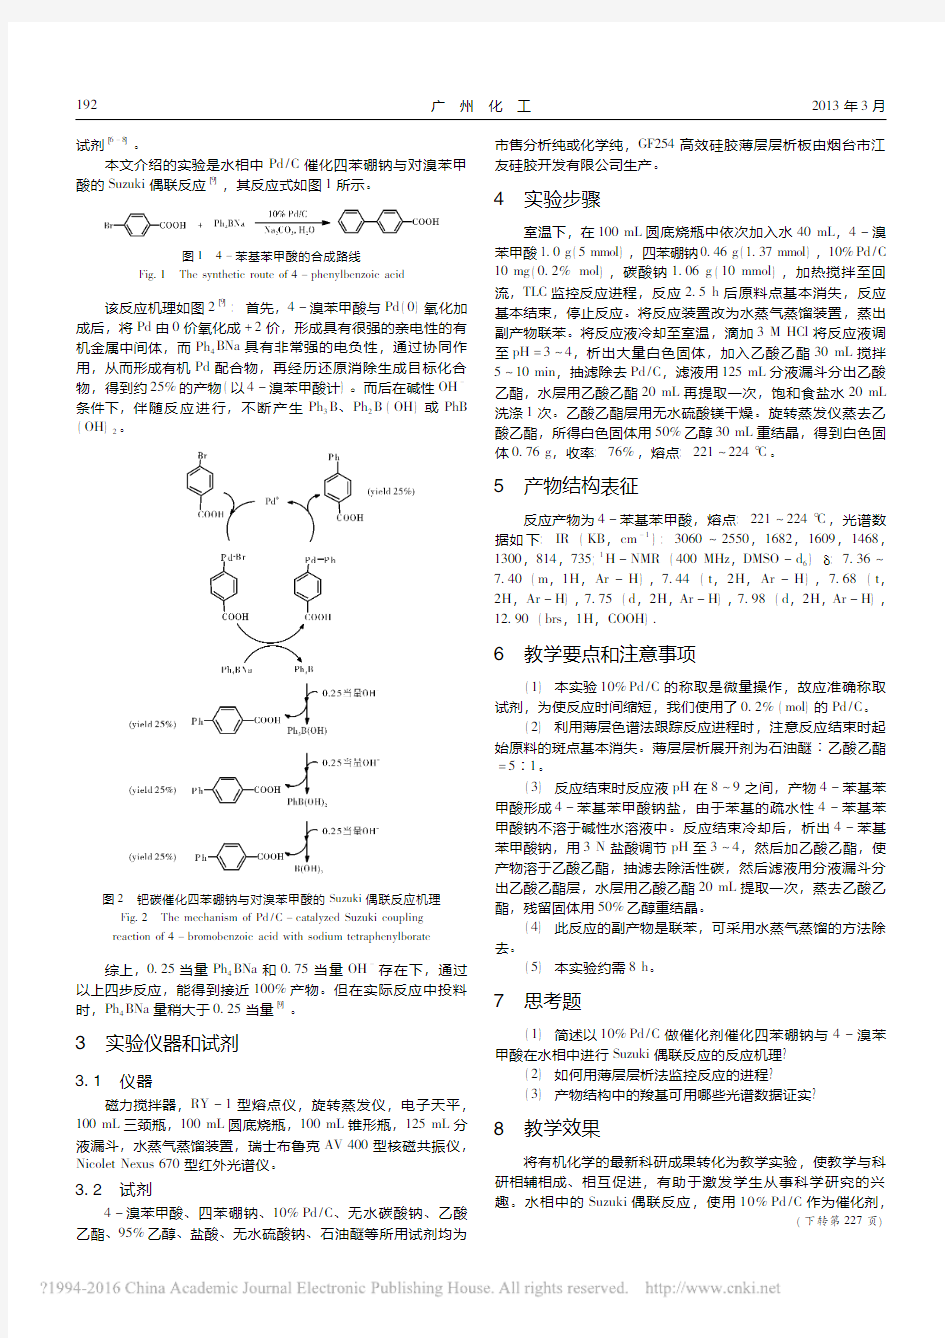 钯碳催化四苯硼钠与对溴苯甲酸的Suzuki偶联反应——介绍一个本科生绿色有机化学实验